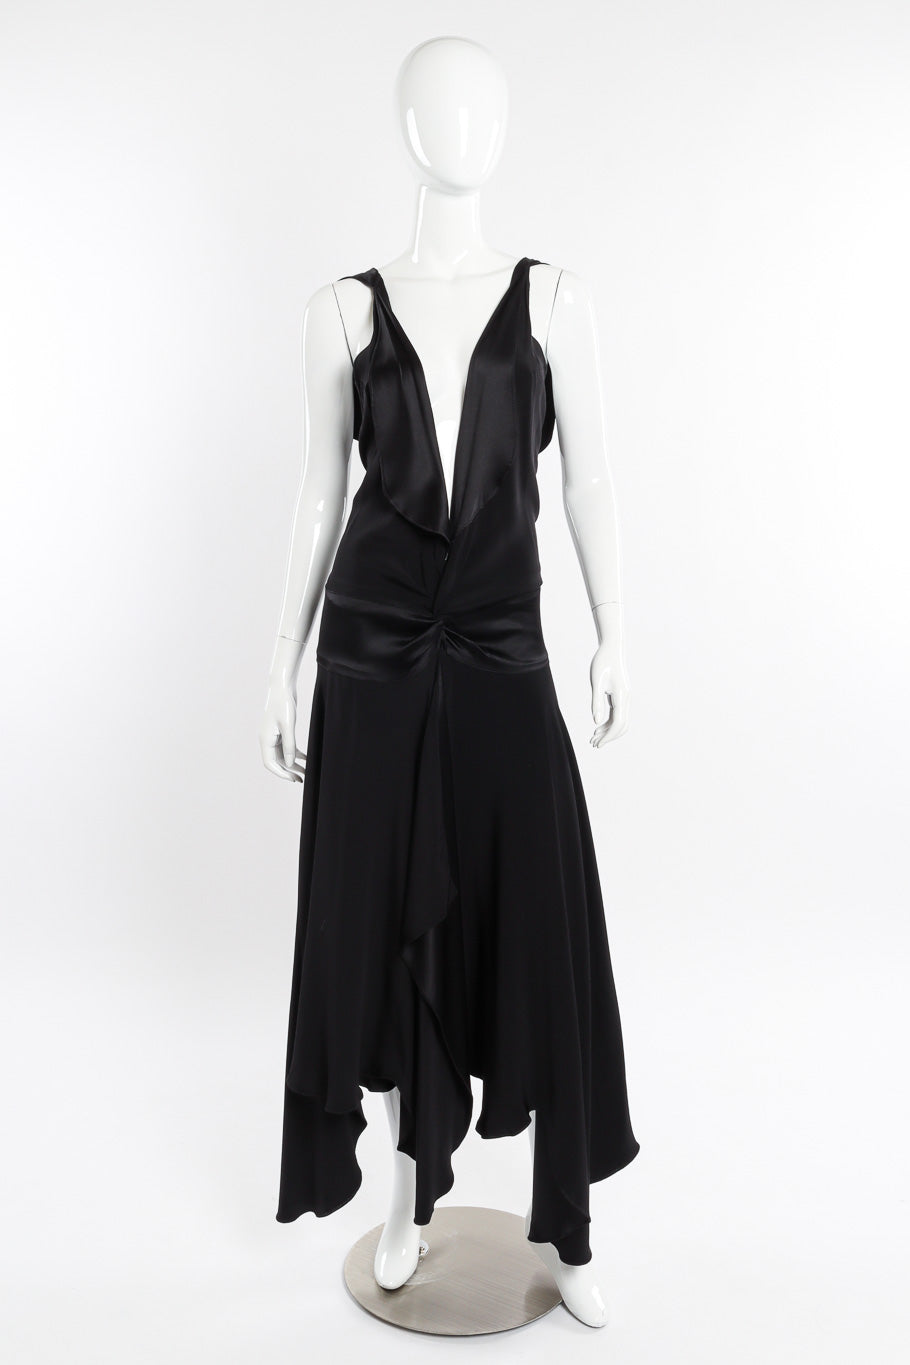 Flutter dress by Eavis & Brown on mannequin @recessla